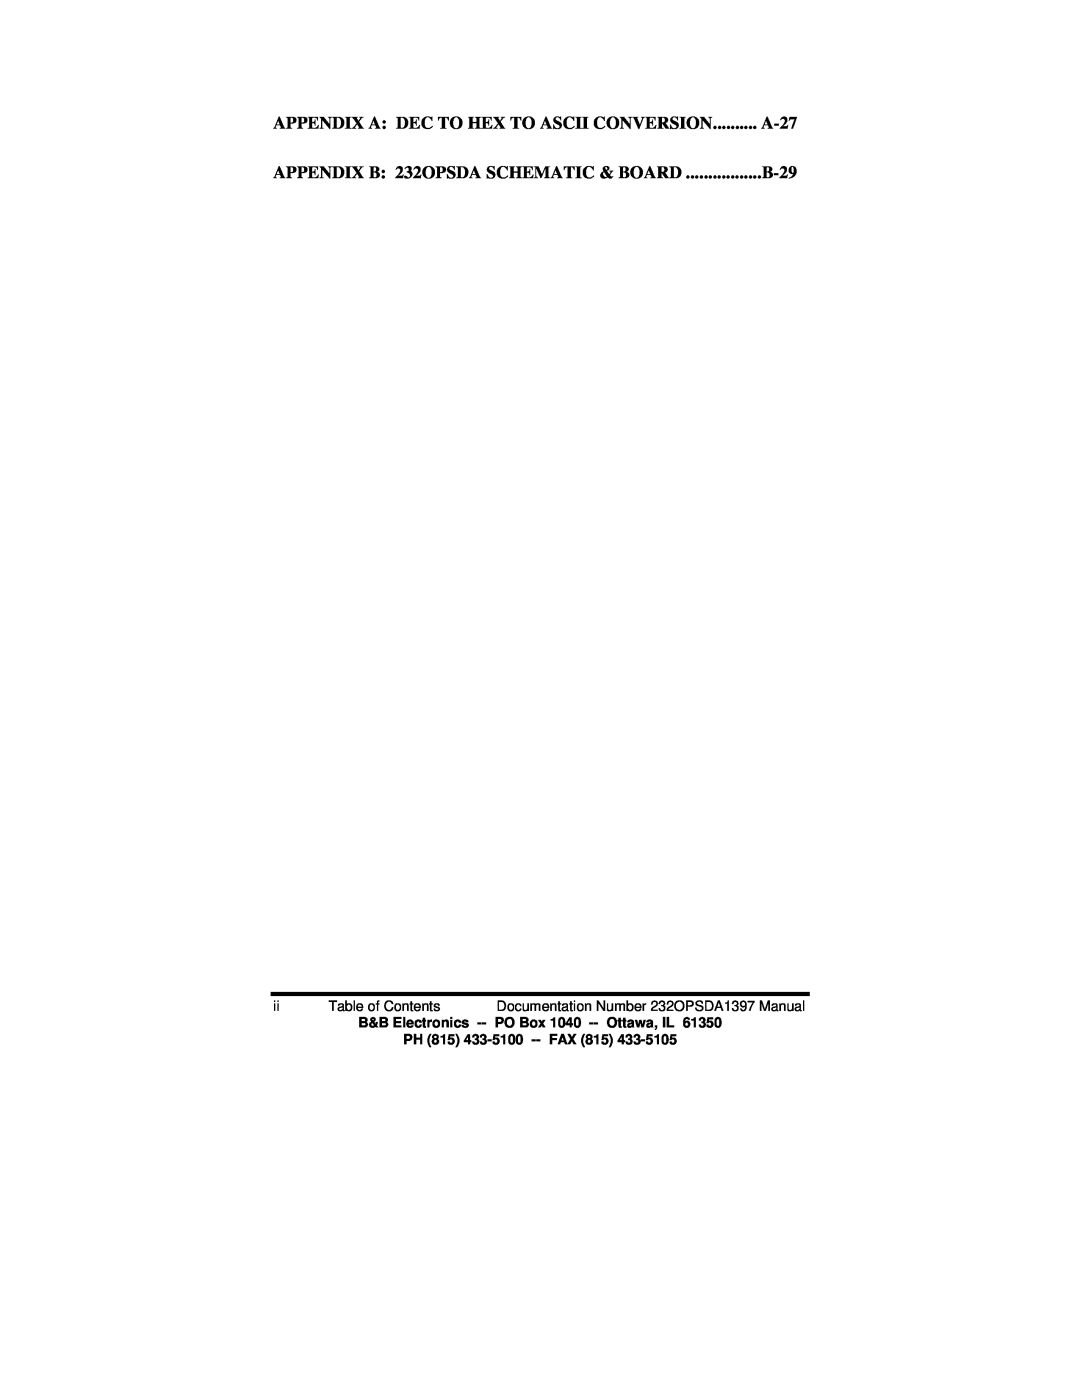 B&B Electronics manual Appendix A Dec To Hex To Ascii Conversion, A-27, APPENDIX B 232OPSDA SCHEMATIC & BOARD, B-29 